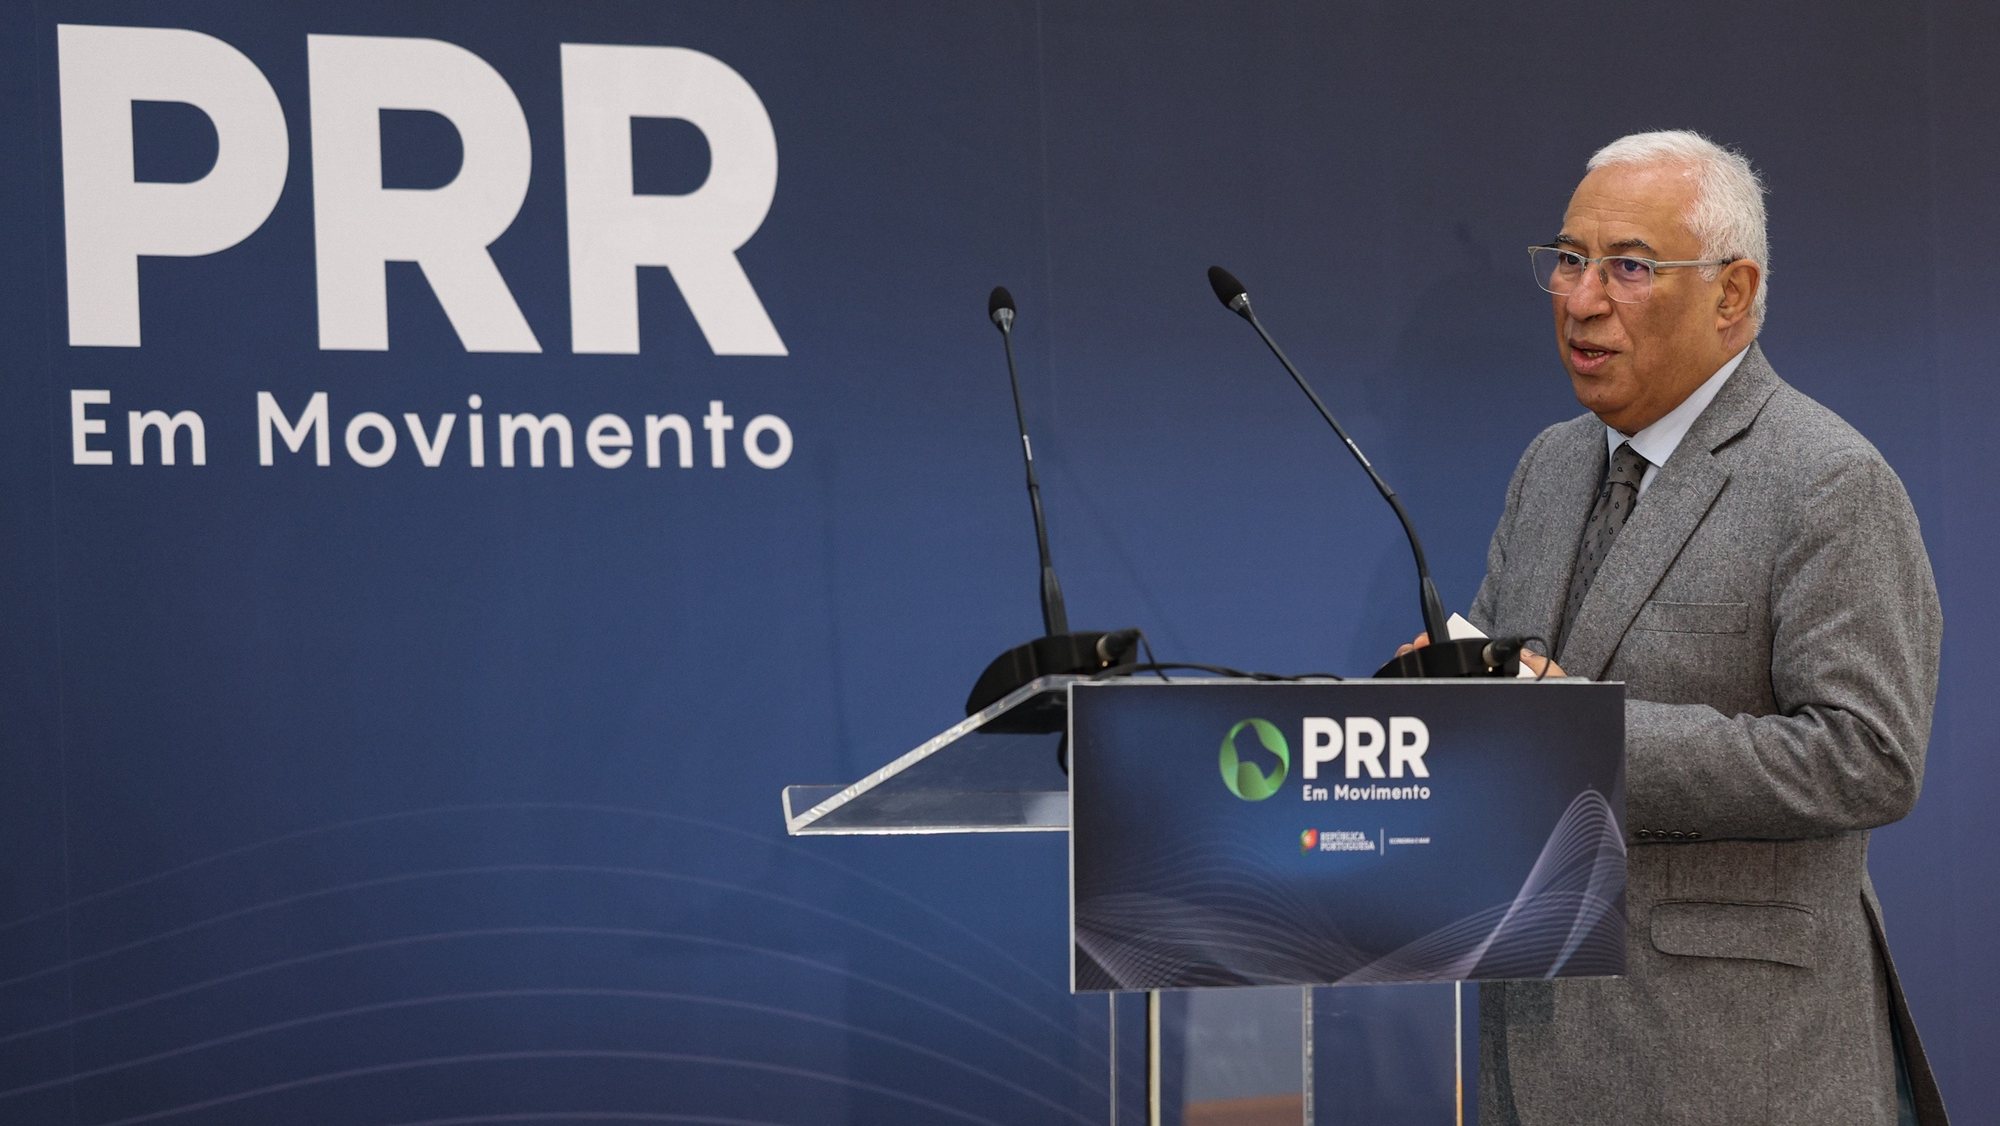 O primeiro-ministro, António Costa, momentos antes de intervir durante a visita à Fusion - Fuel Portugal, S.A , no âmbito do PRR em Movimento, (Agendas Mobilizadoras de Inovação - Componente C5 “Capitalização e Inovação Empresarial” do PRR), em Benavente, Santarém,10 de janeiro de 2023. ANTÓNIO COTRIM/LUSA